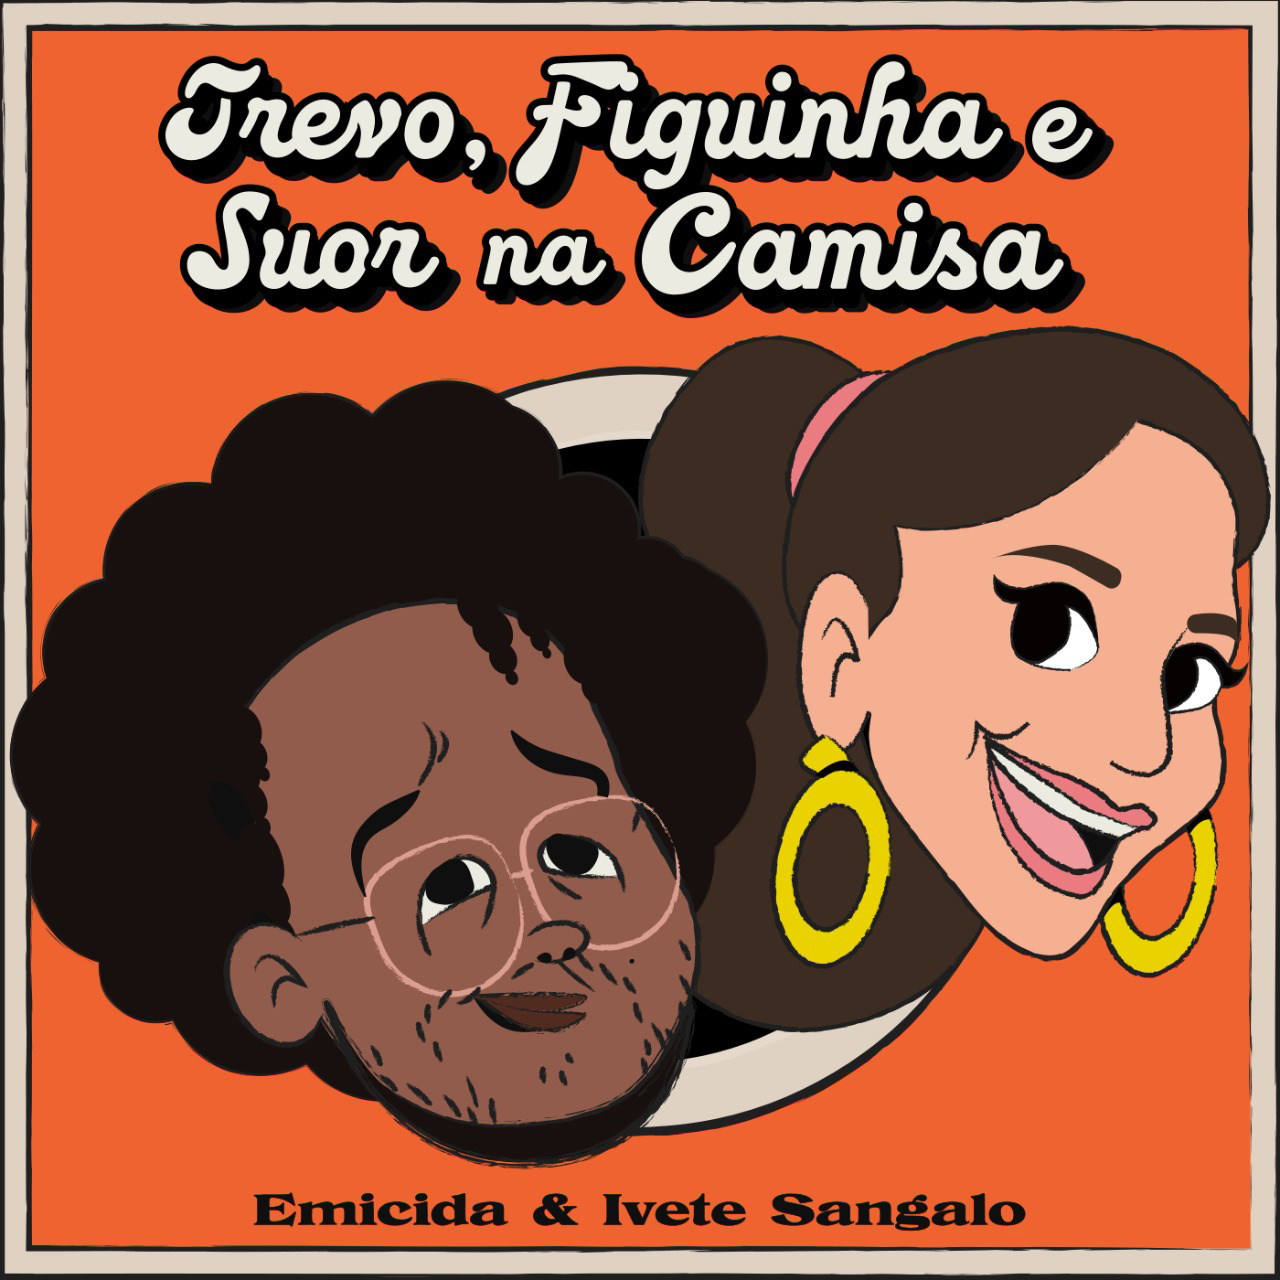 Emicida e Ivete Sangalo lançam “Trevo, Figuinha e Suor na Camisa”; ouça parceria